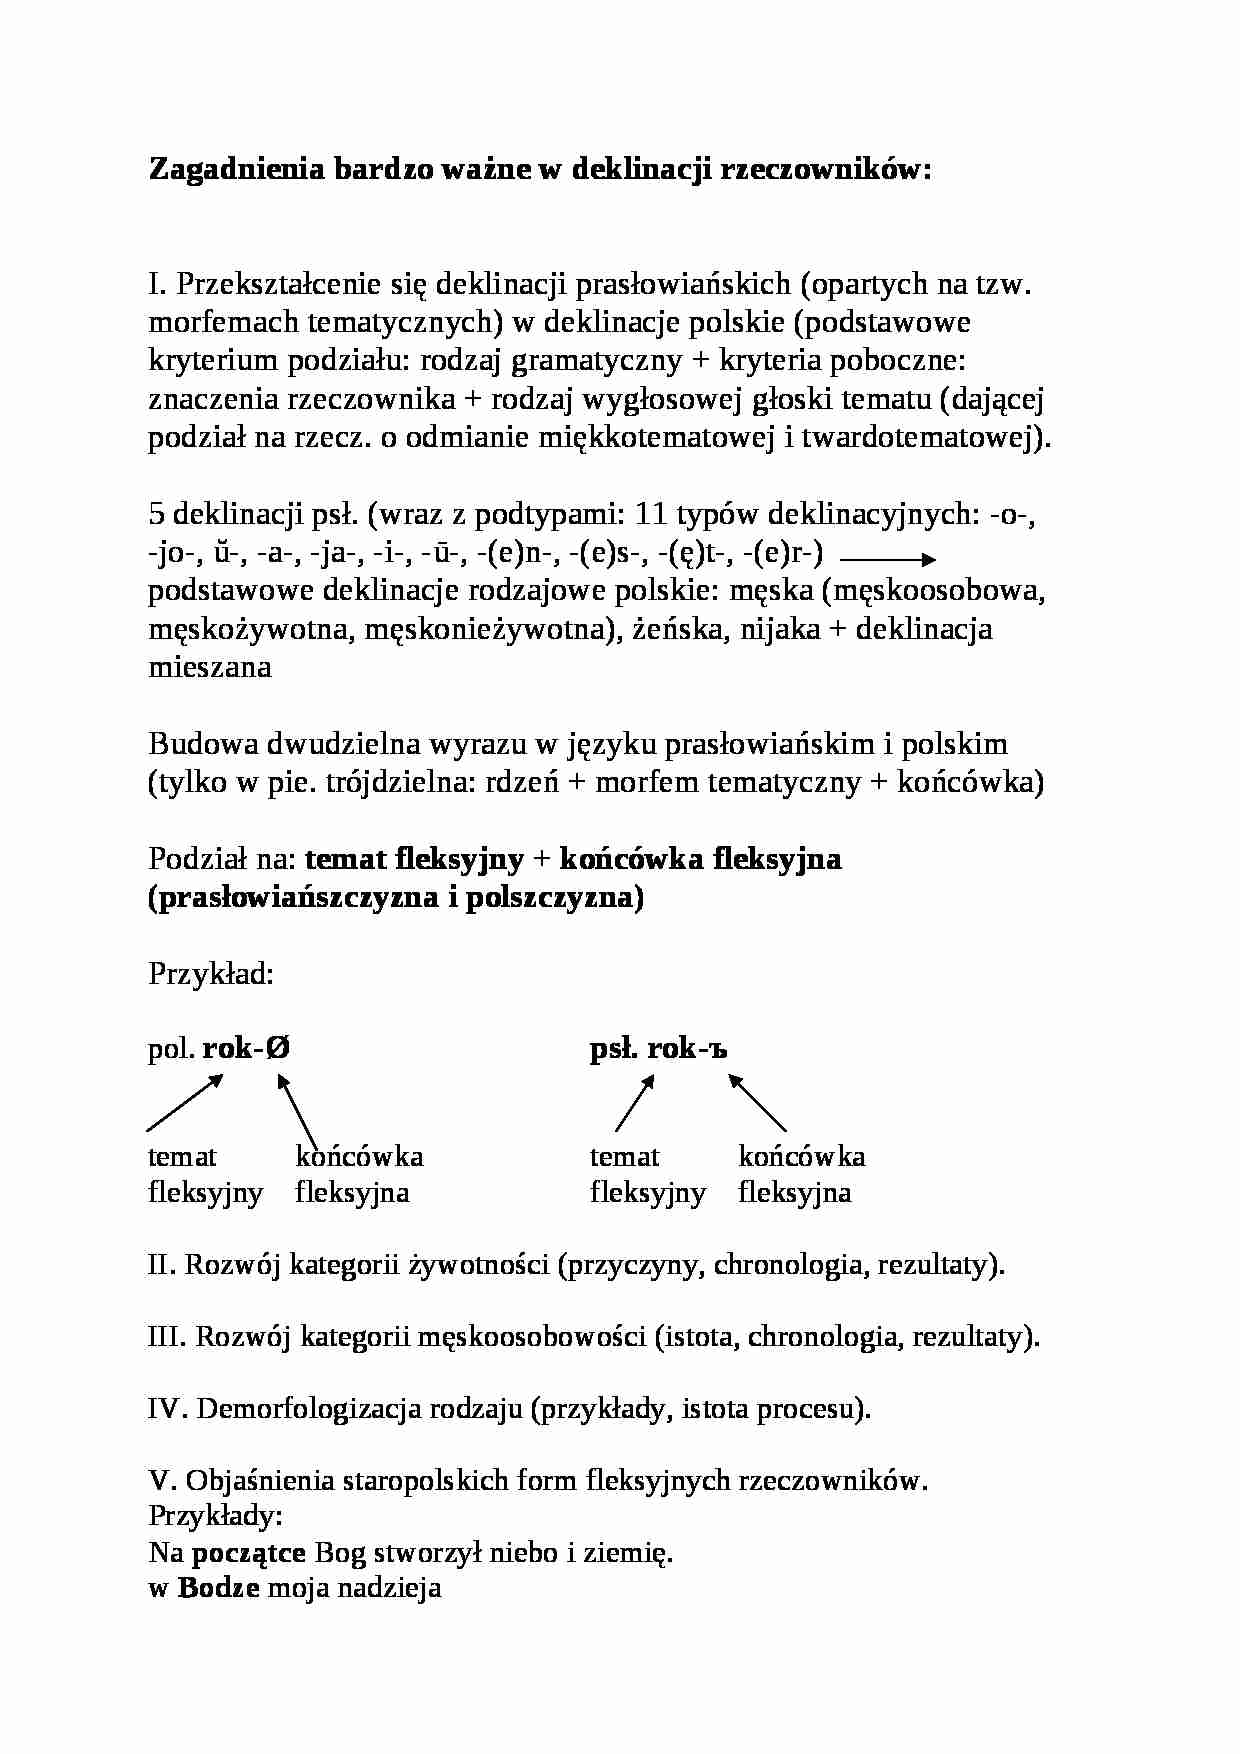 Zagadnienia ważne w deklinacji rzeczownikowej-opracowanie - strona 1